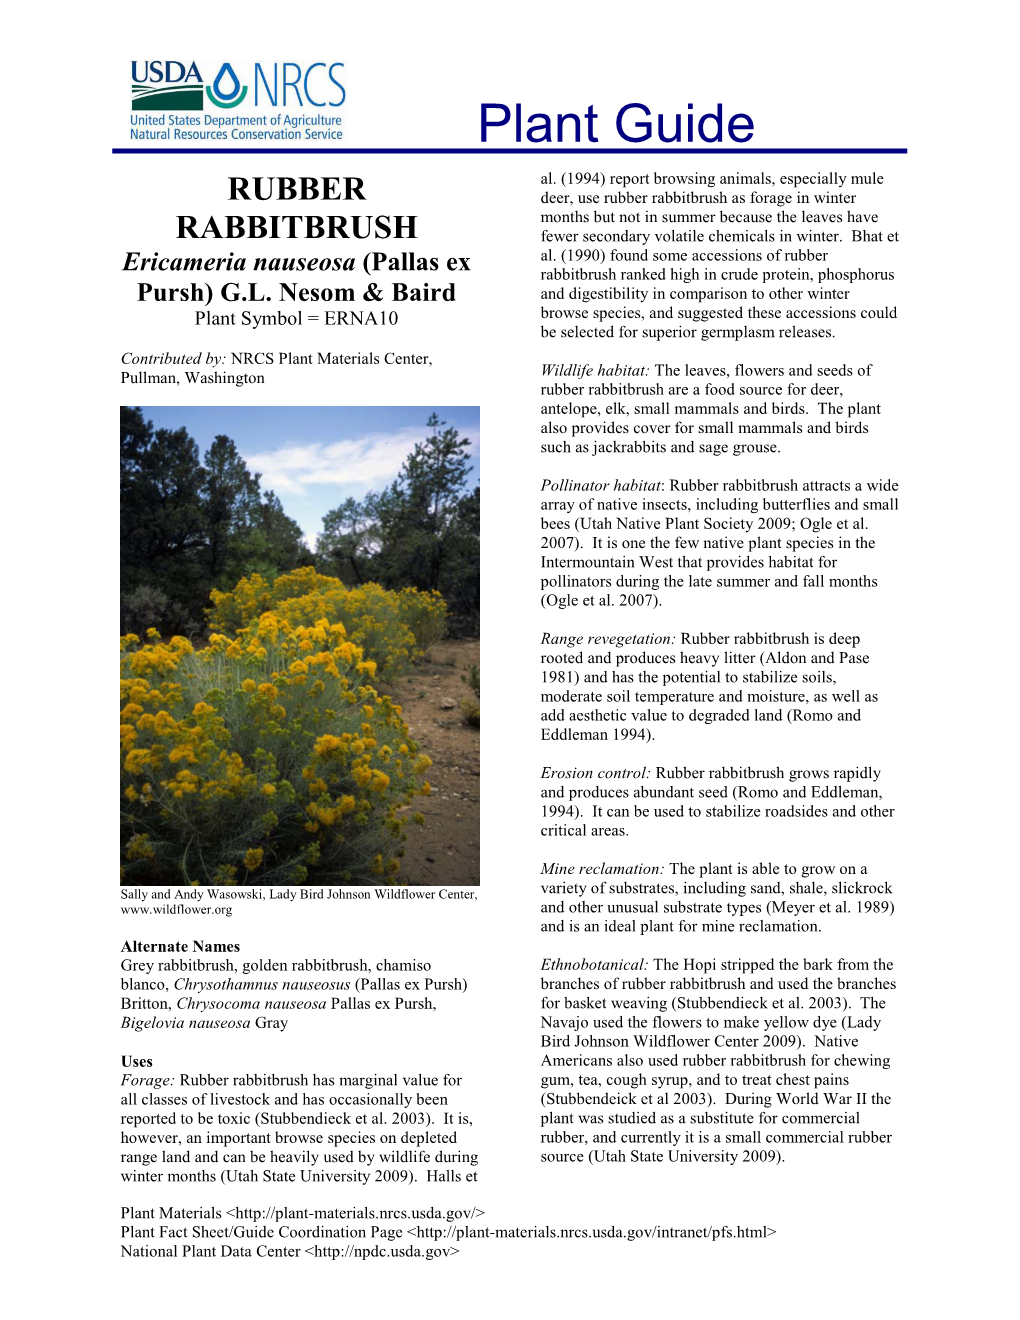 Rubber Rabbitbrush (Ericameria Nauseosa) Plant Guide